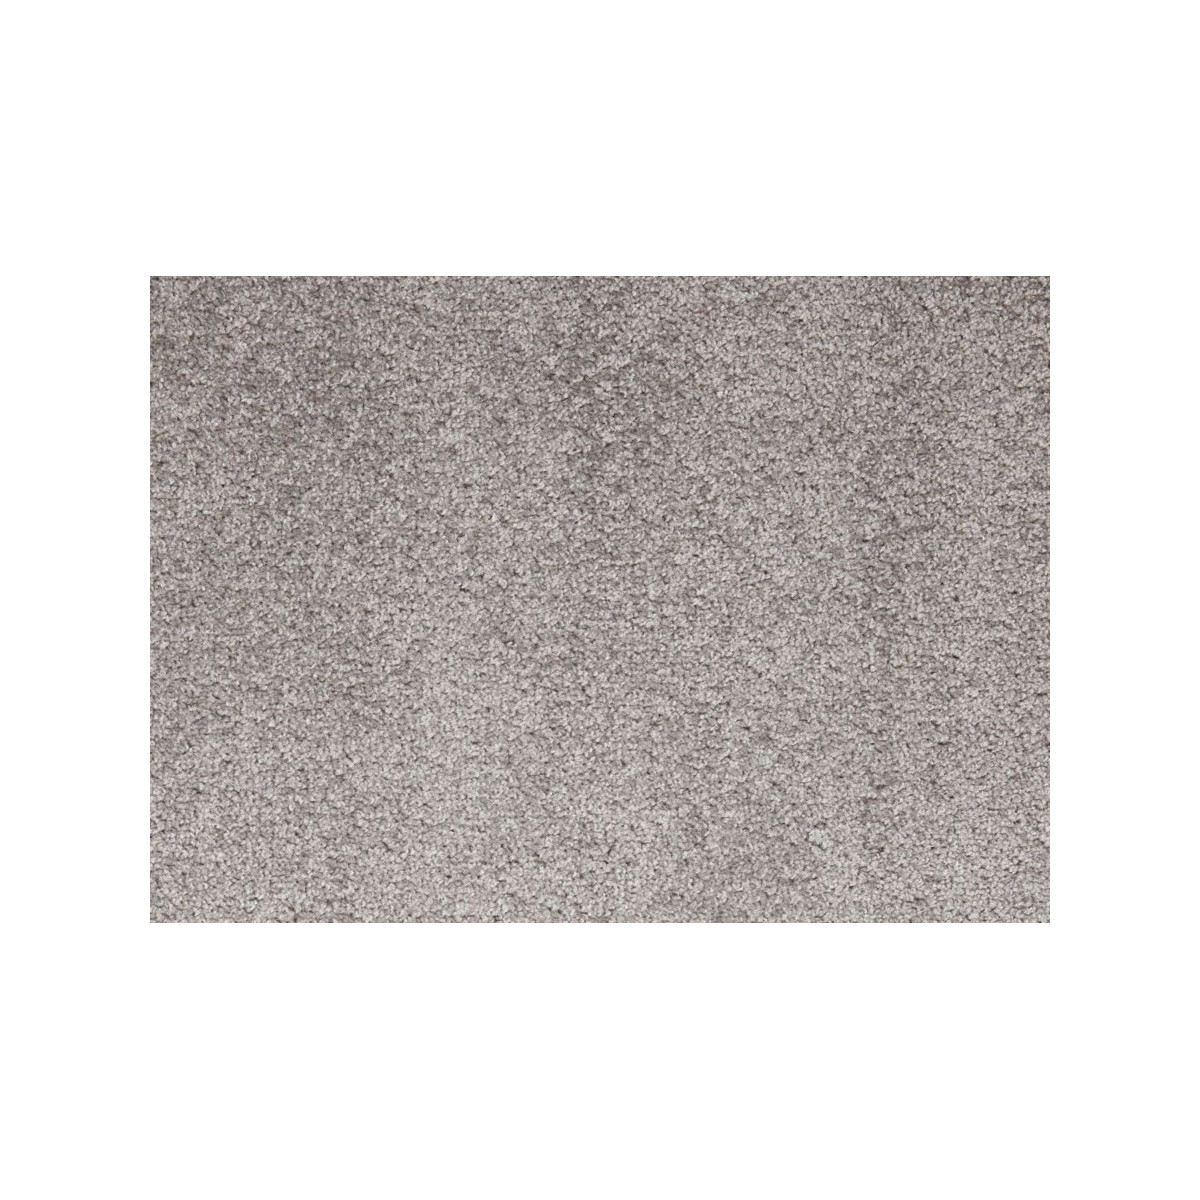 AKCE: 55x500 cm Metrážový koberec Dynasty 73